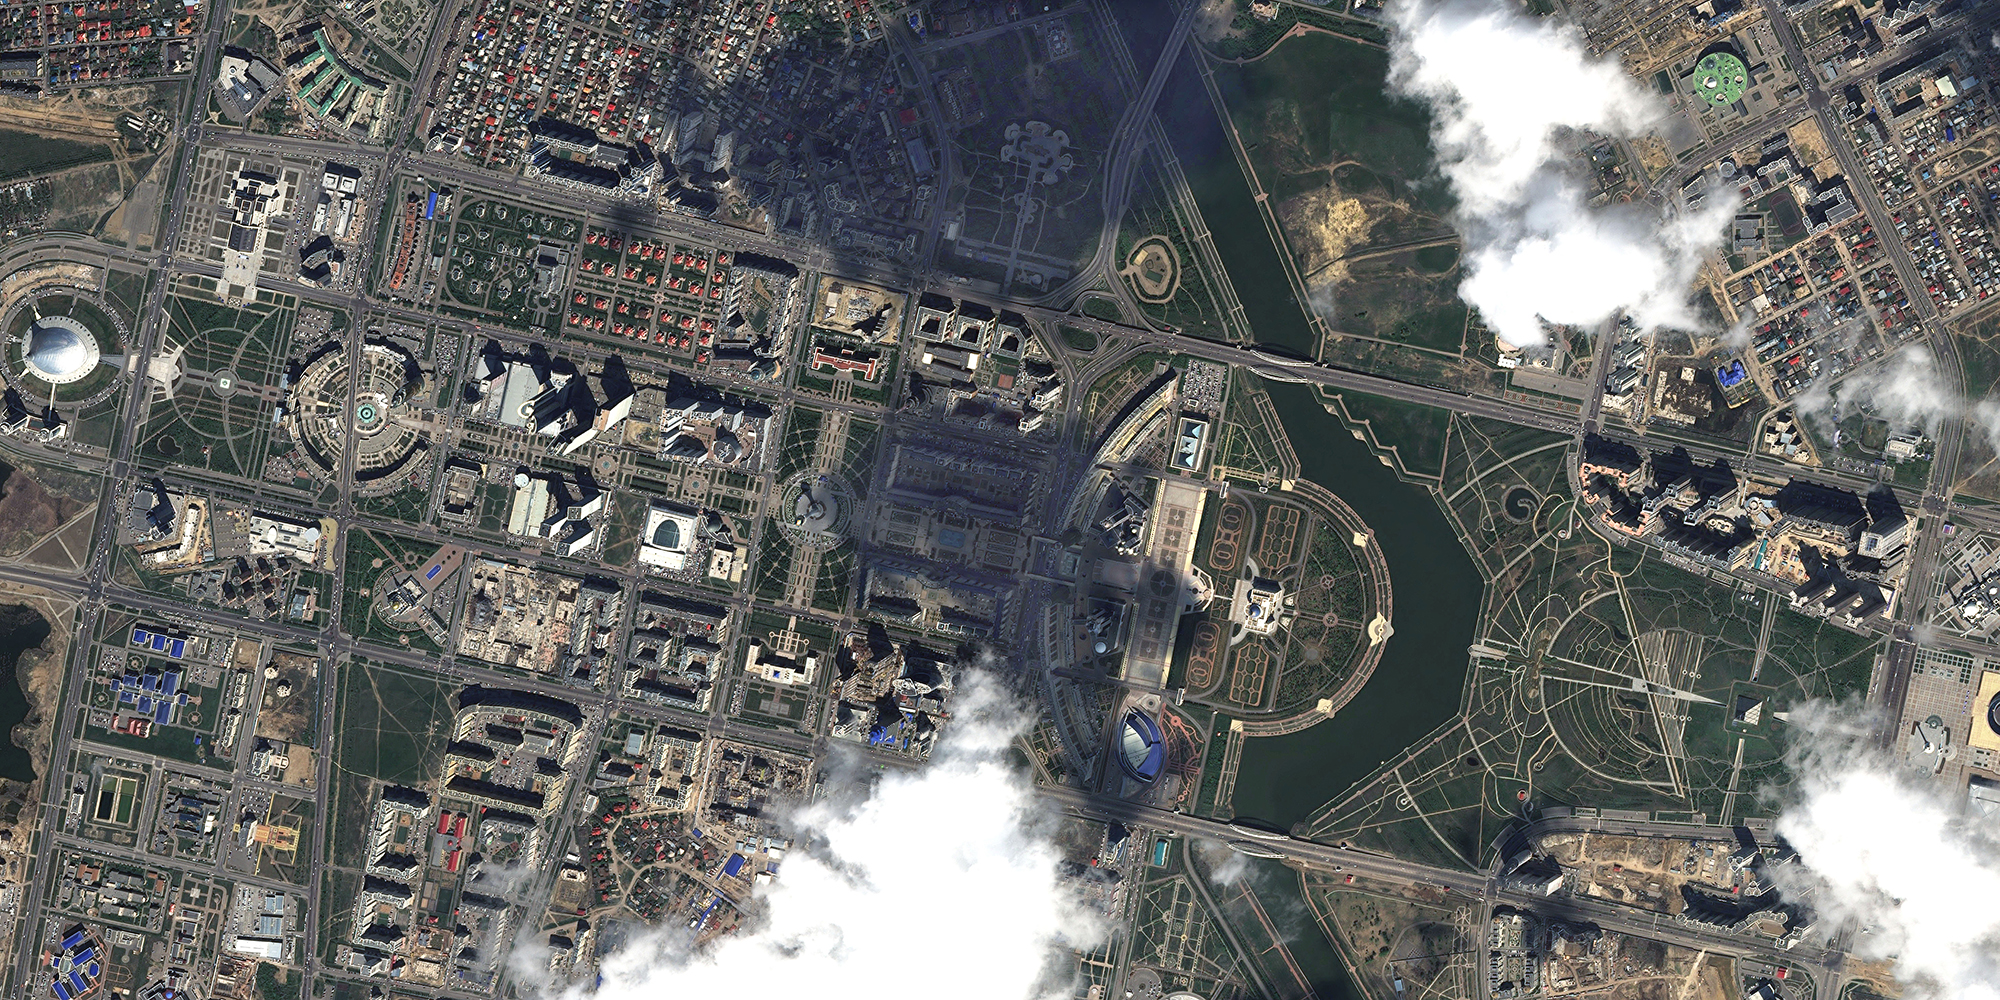 Спутниковая карта кокшетау - 96 фото